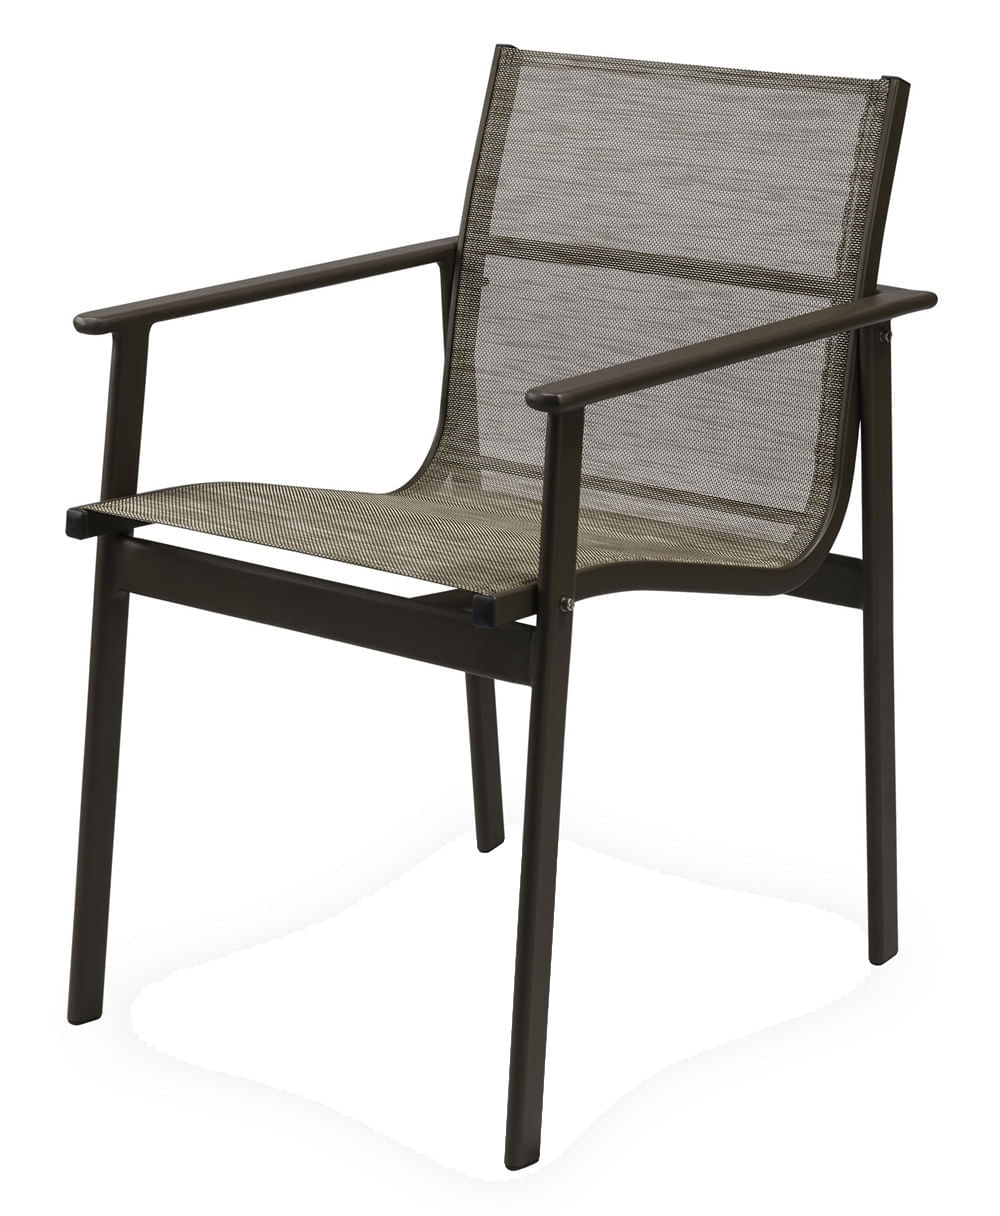 Cadeira Solano Assento em Tela Sintetica cor Cinza com Base Aluminio - 44545